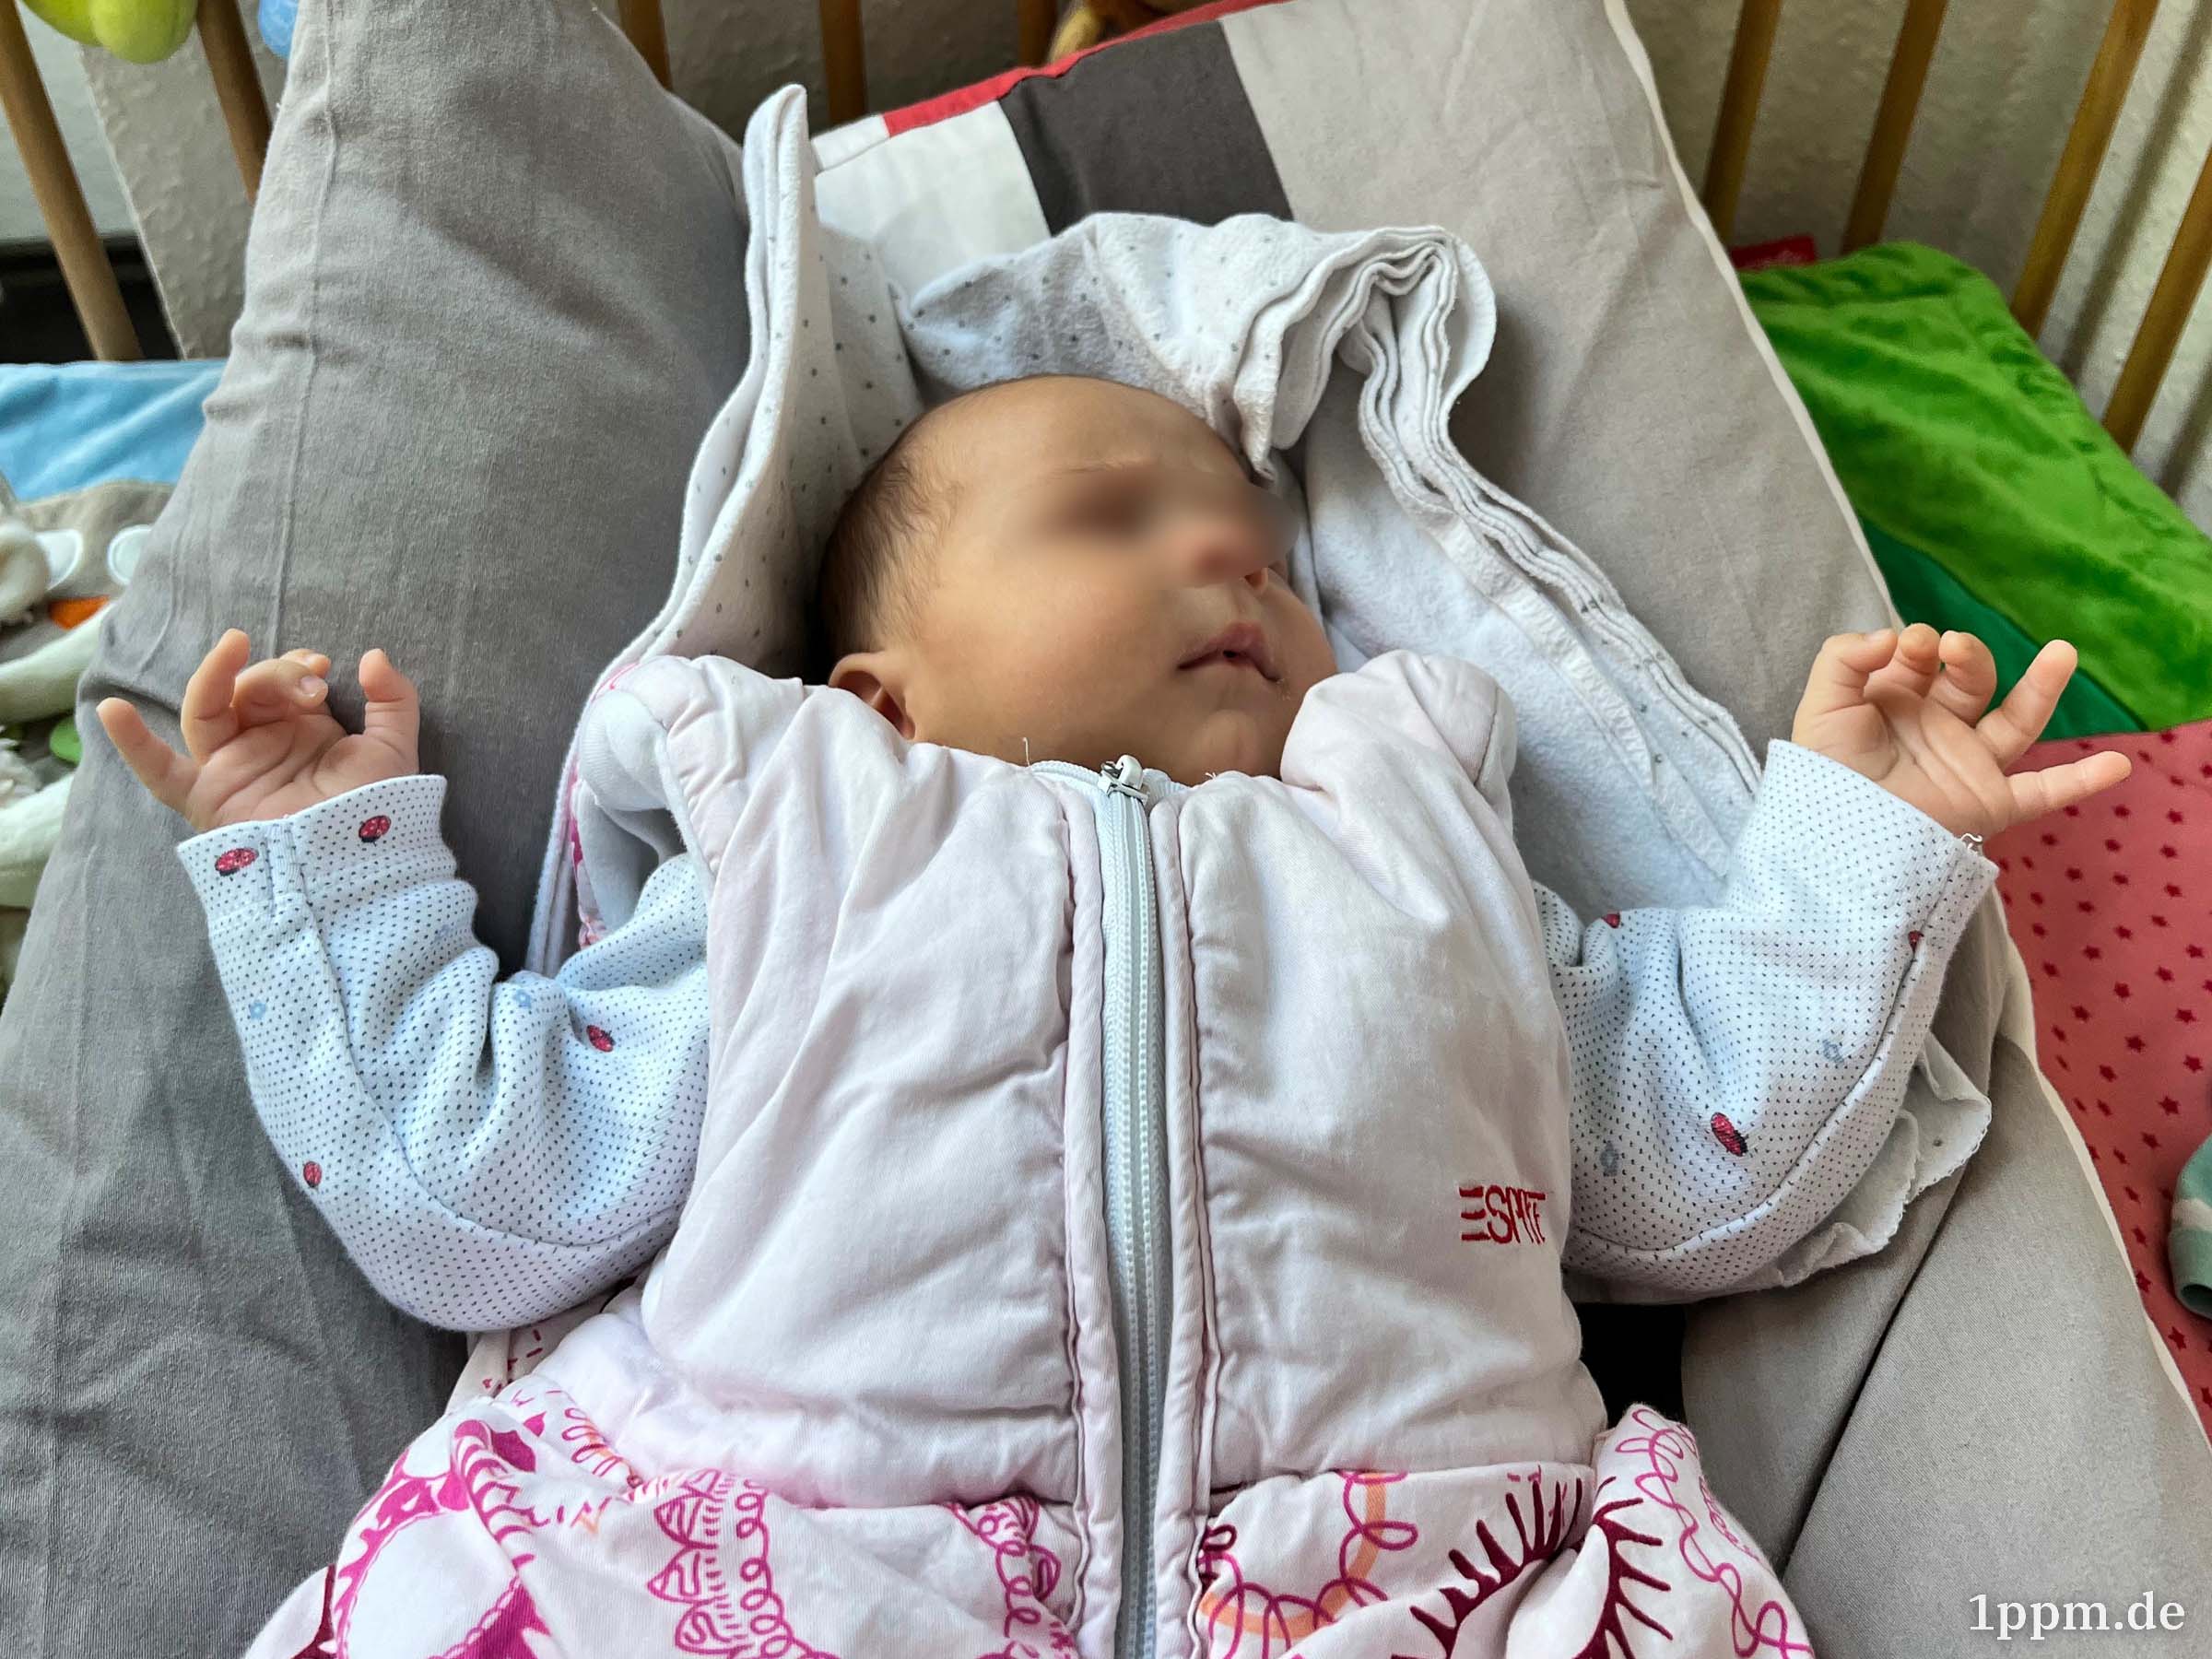 Ein Baby im Schlafsack liegt auf einem Kissen und hält beide Hände leicht nach oben.